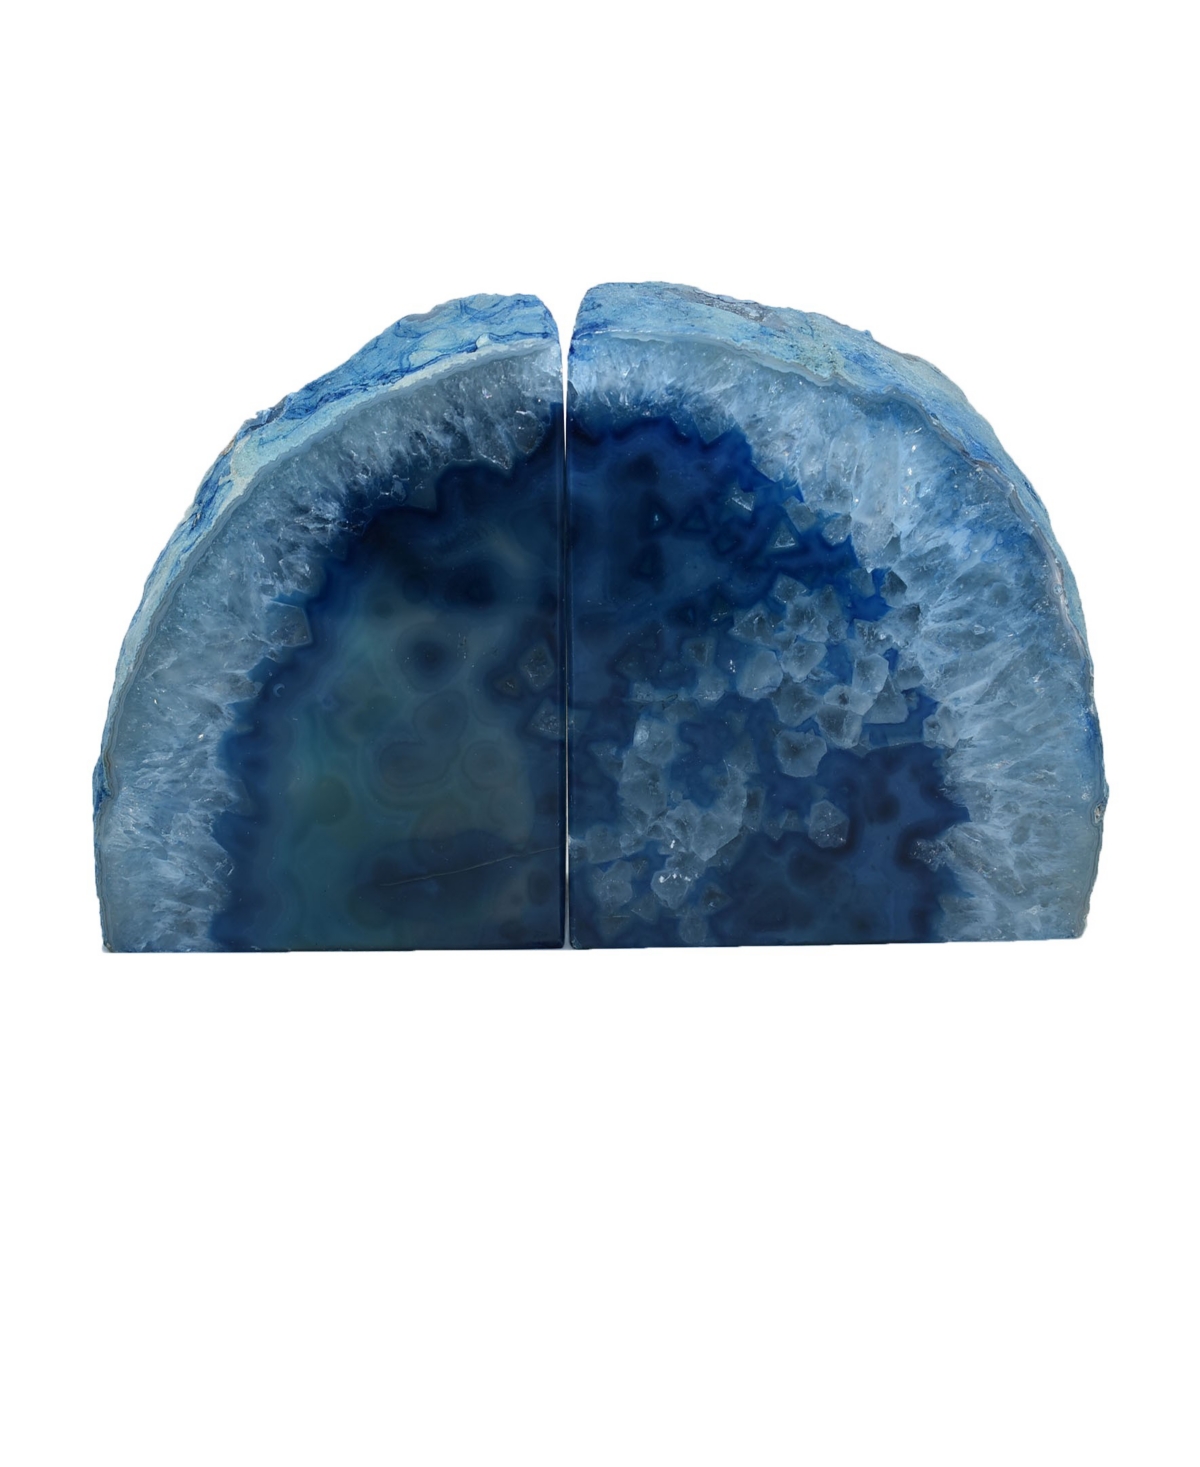 Nature's Decorations - Premium Agate Medium Bookends In Blue